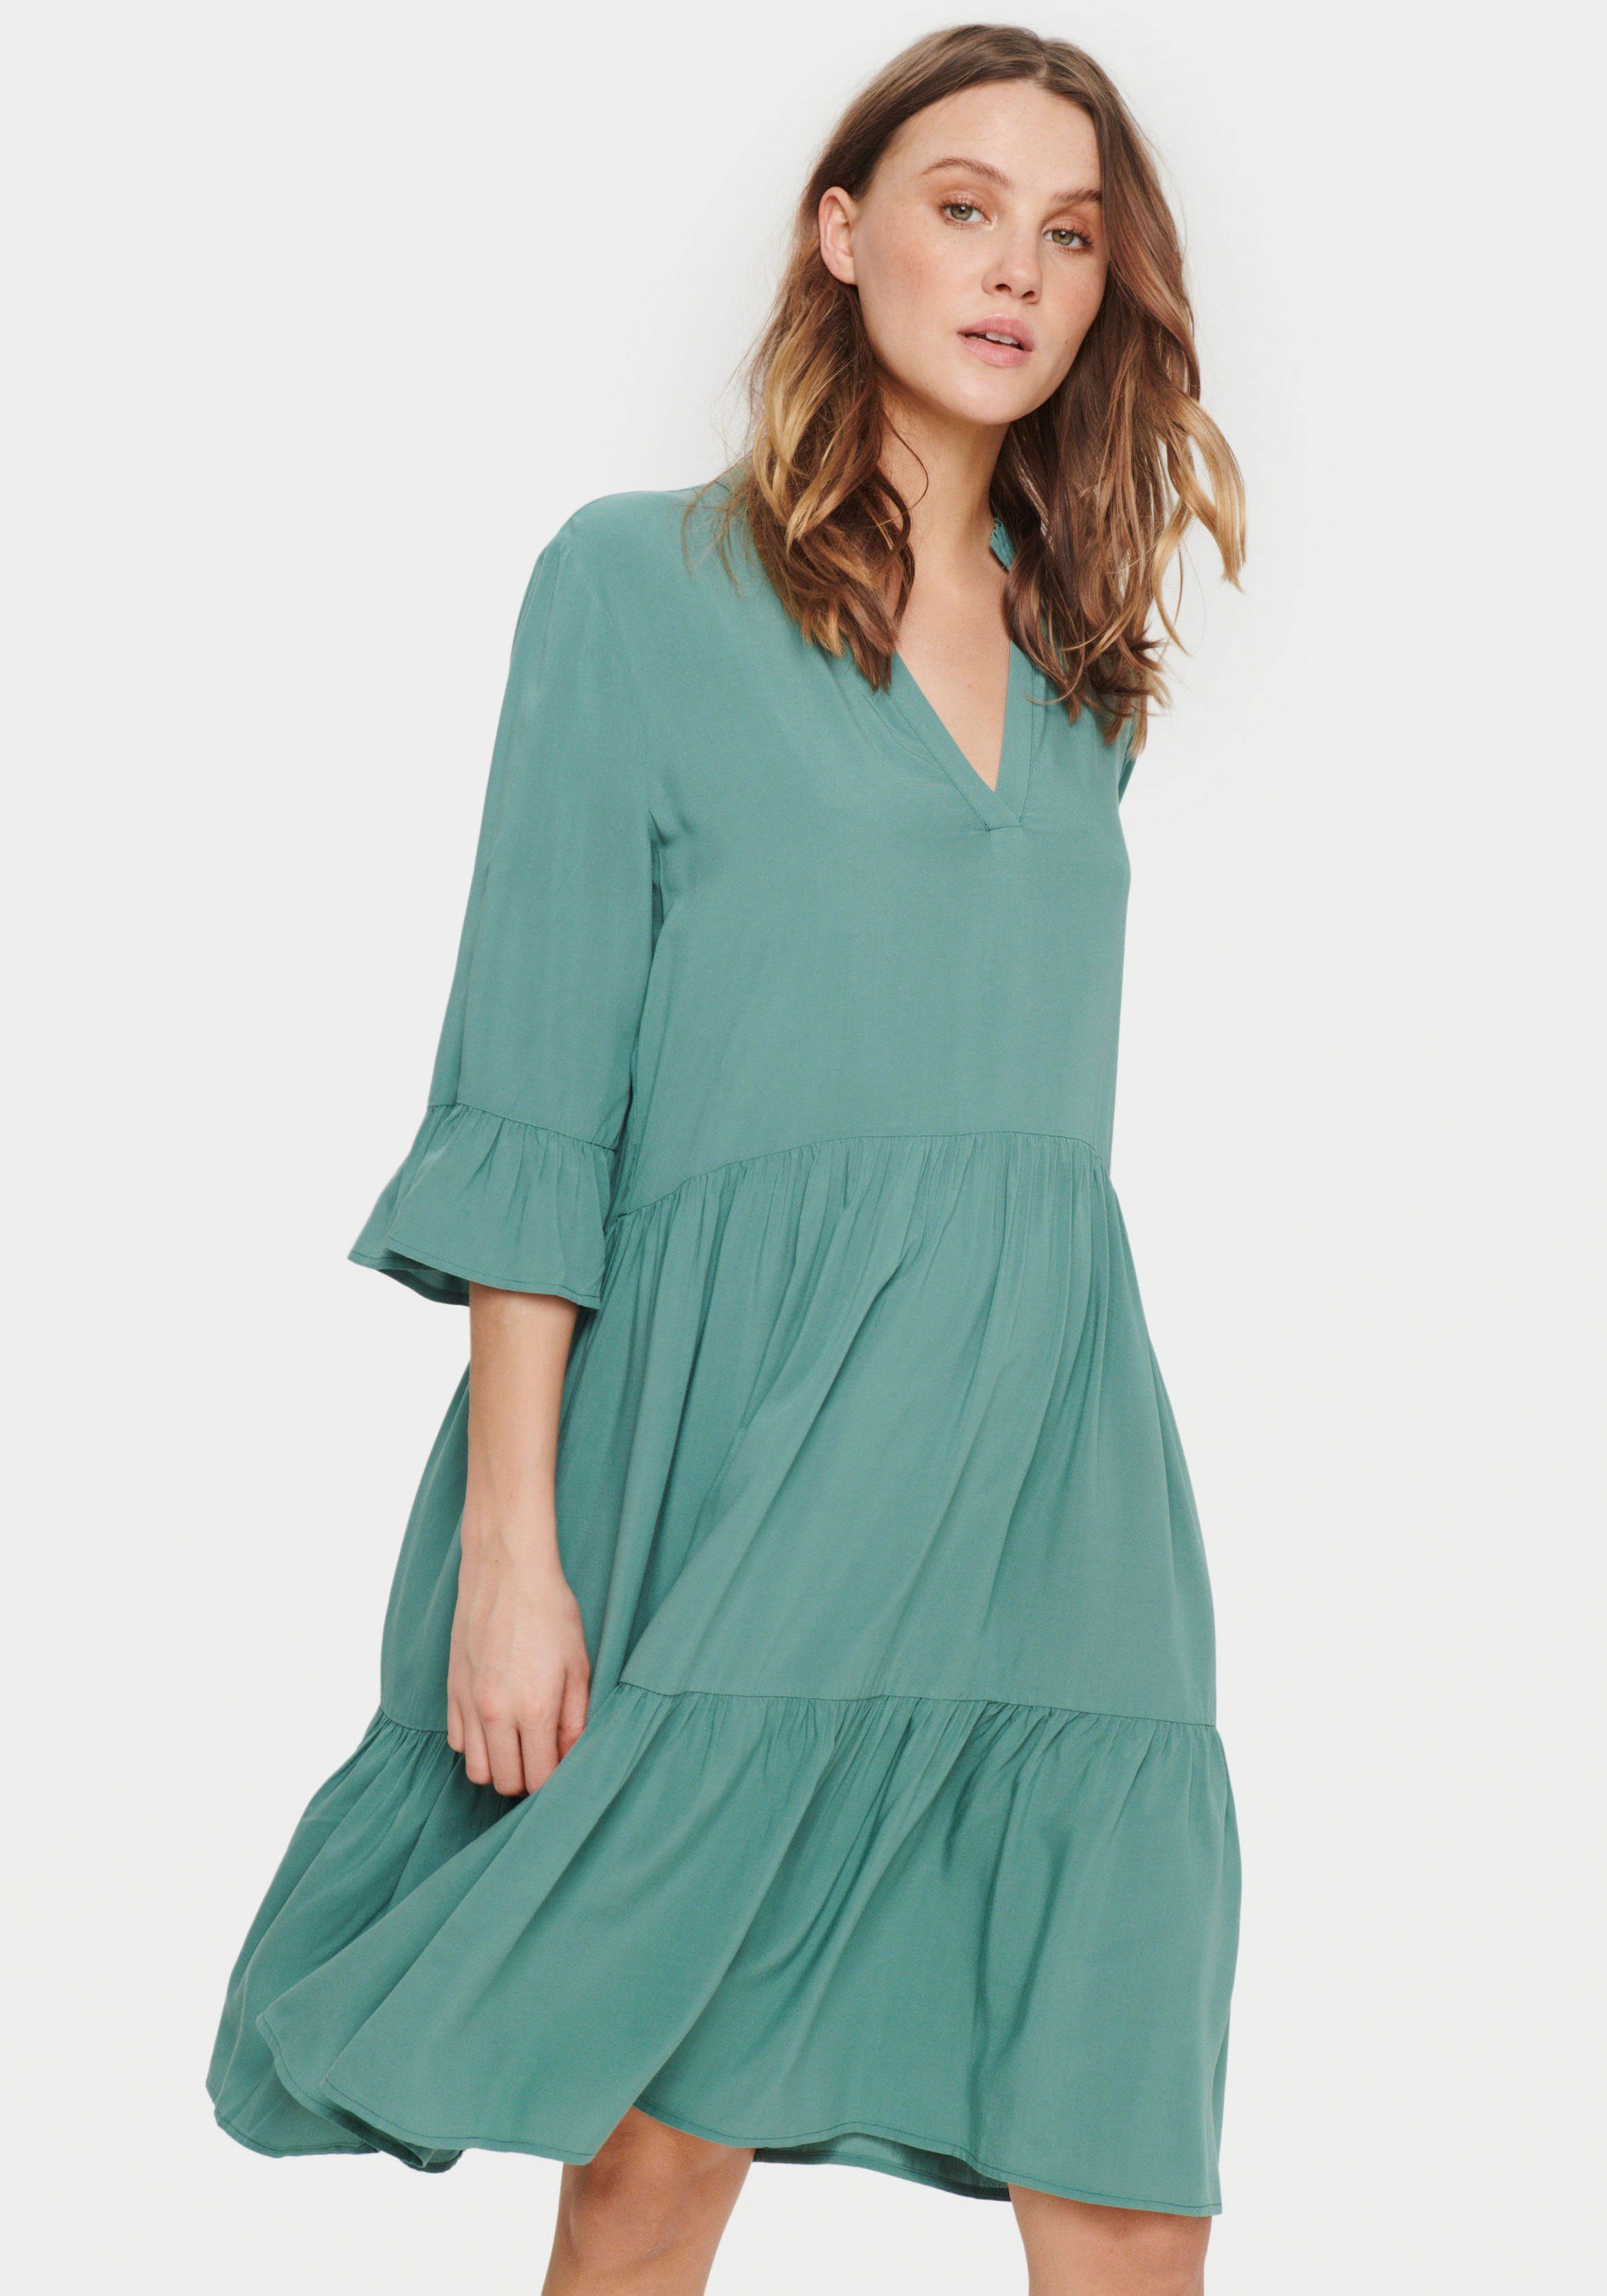 Saint Tropez Sommerkleid EdaSZ Dress Sagebrush Volant mit und 3/4 Green Ärmel